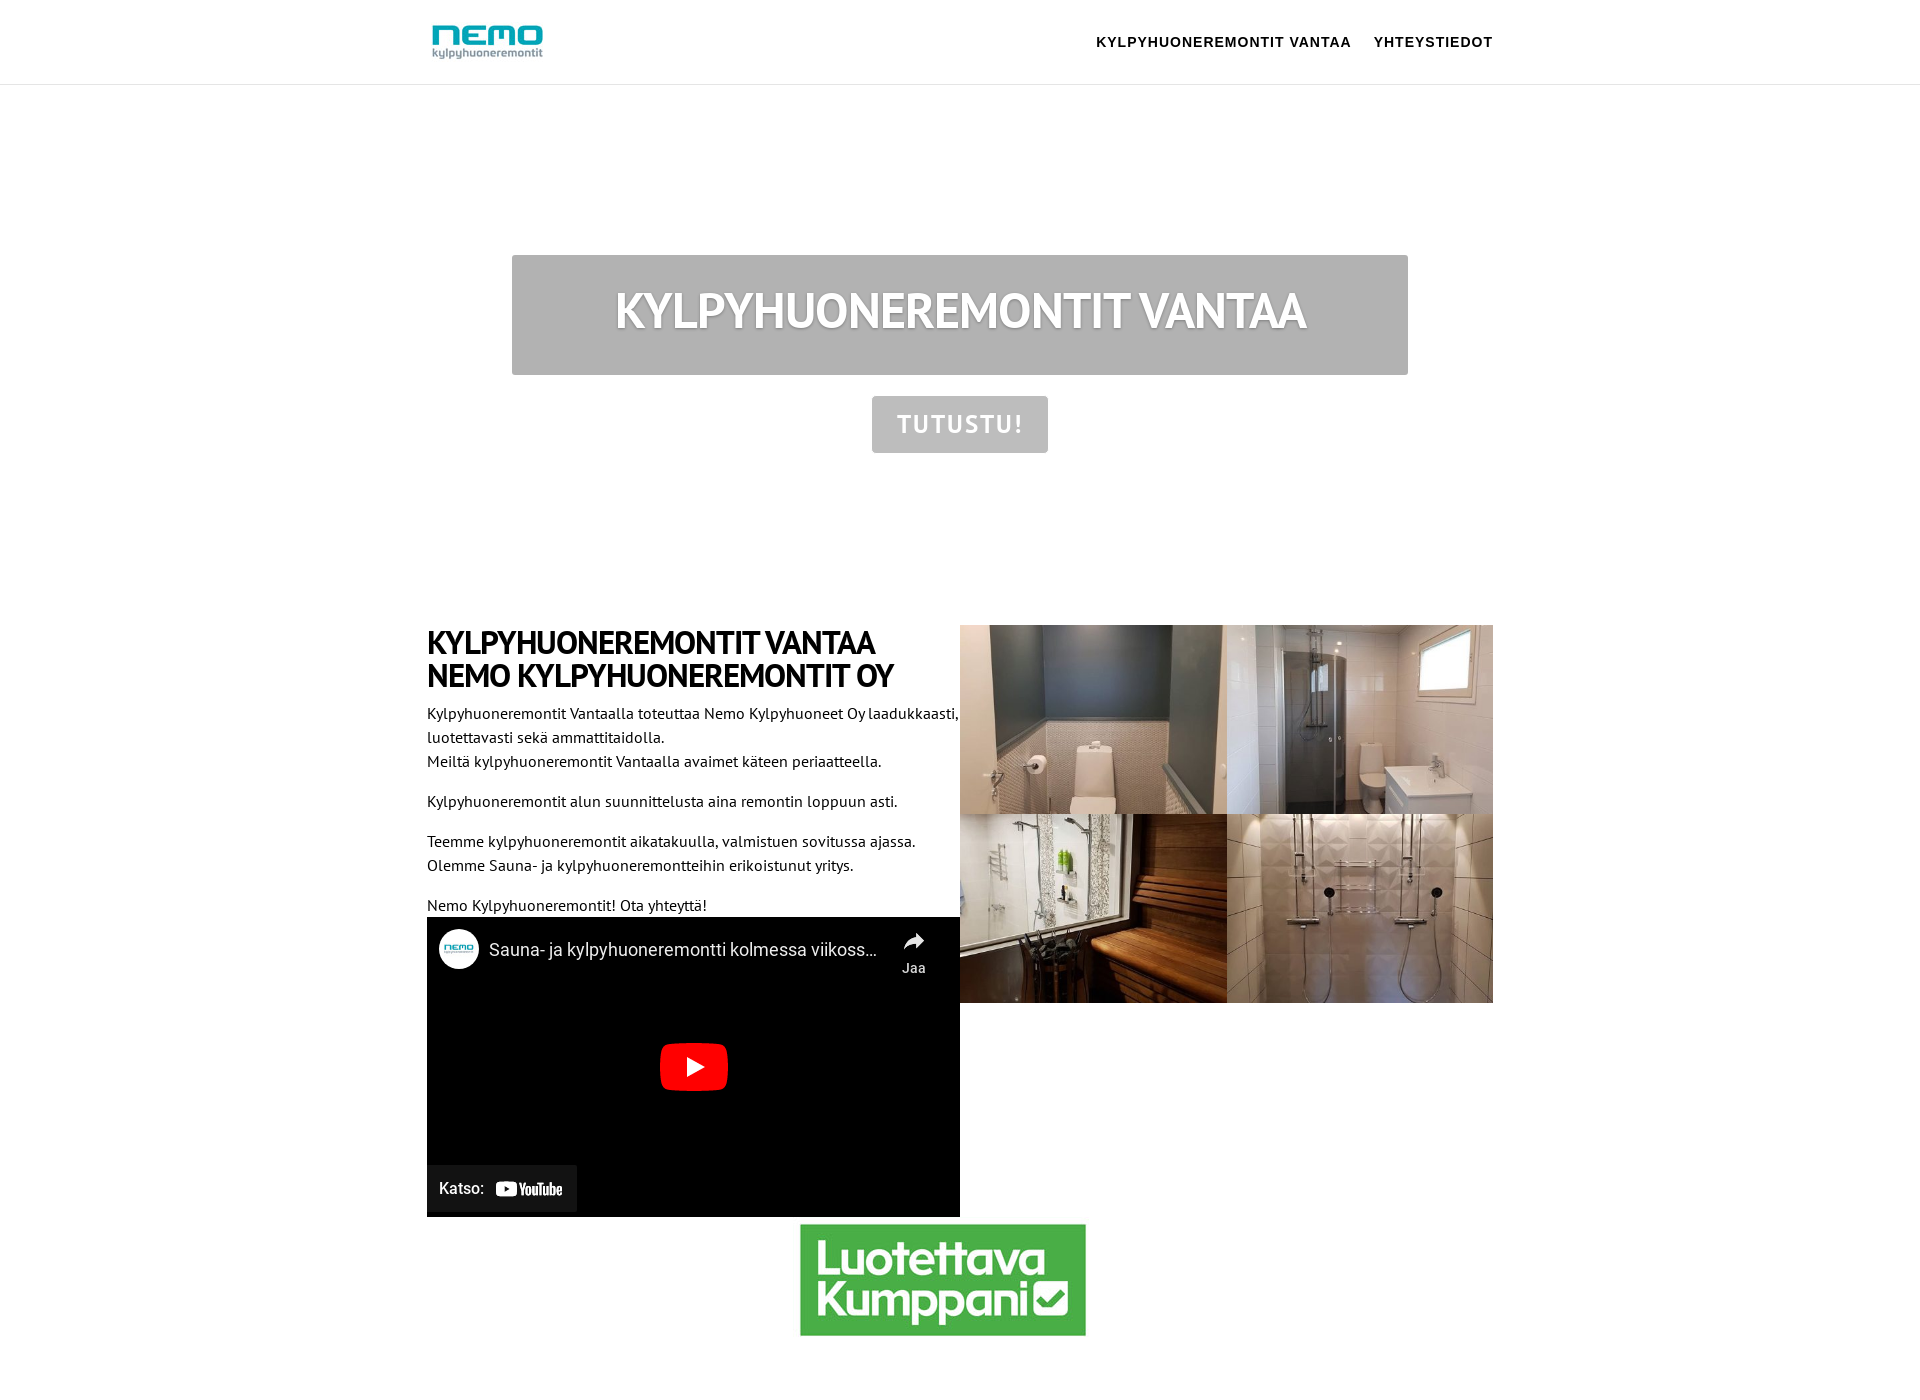 Skärmdump för kylpyhuoneremontitvantaa.fi